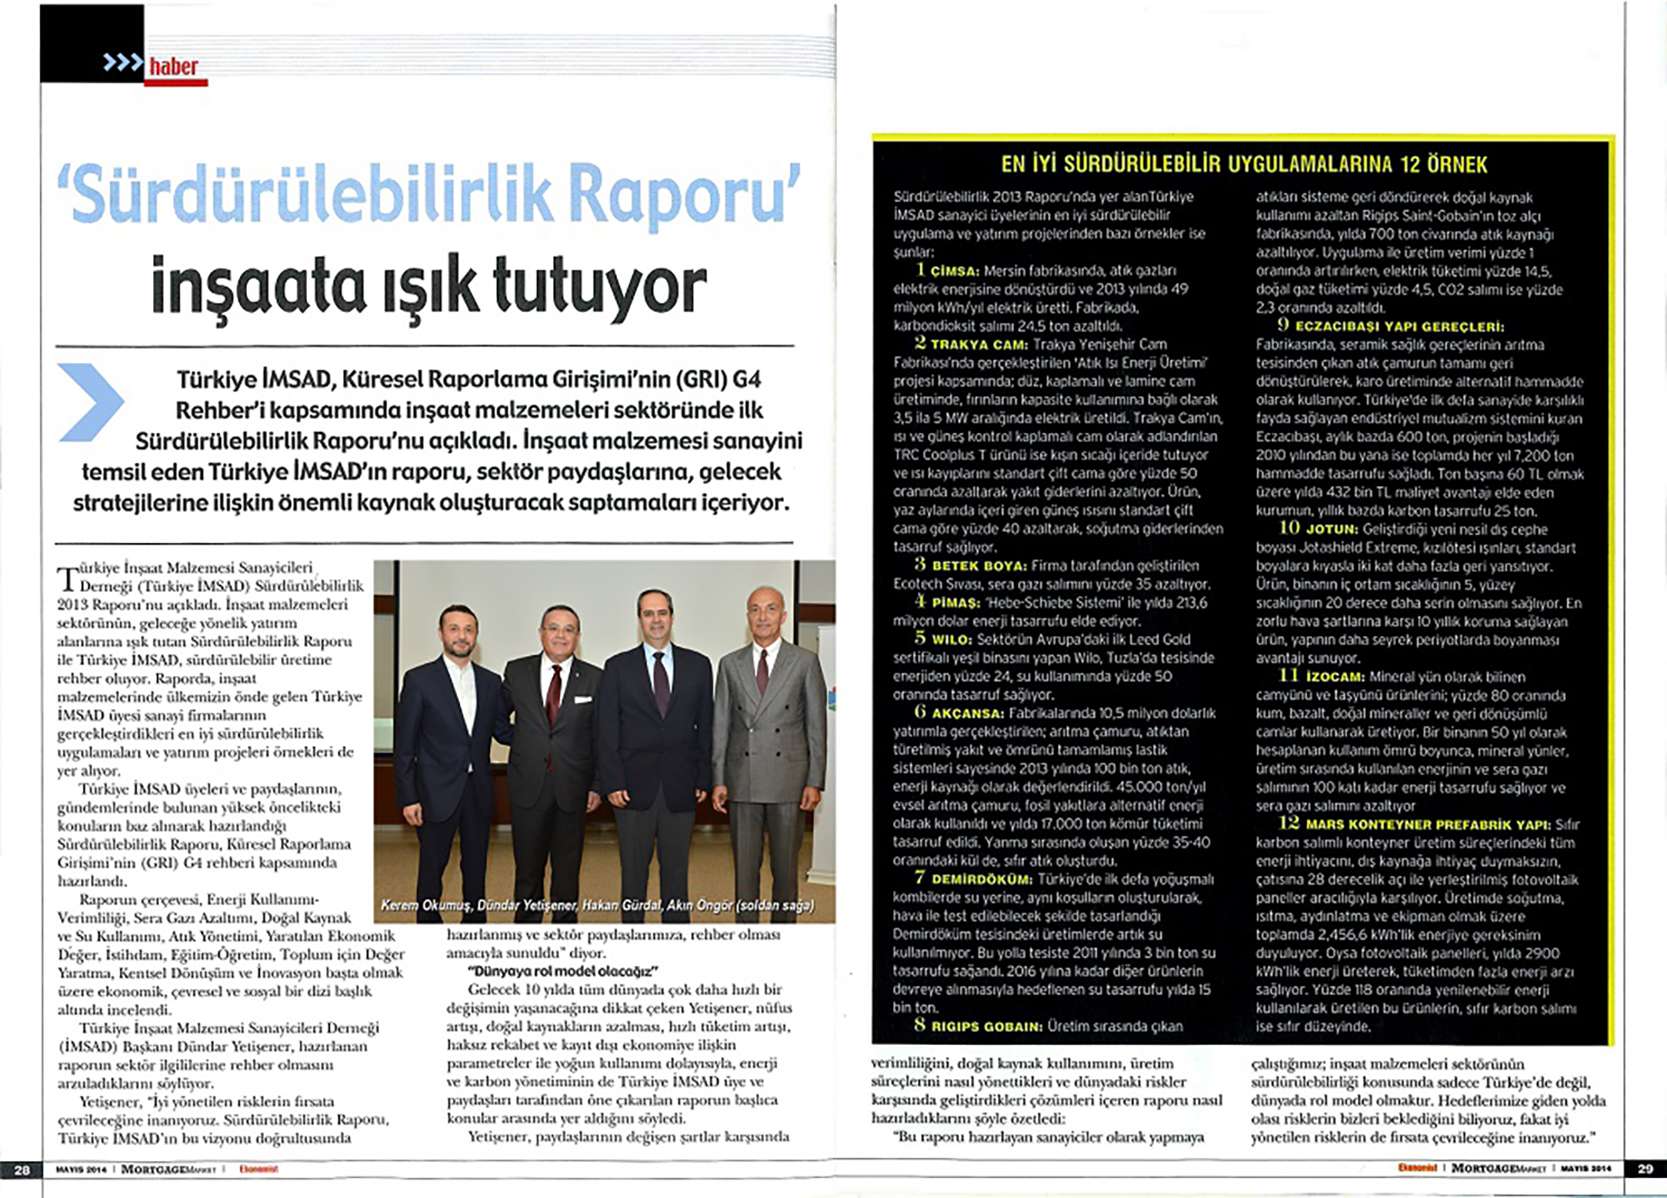 Fibrobeton Türkiye İMSAD Tarafından Yayınlanan “Sürdürülebilirlik Raporu 2013”, Ile Ilgili Ekonomist Dergisinin Bu Haftaki Sayısında Yayınlanan Haberi